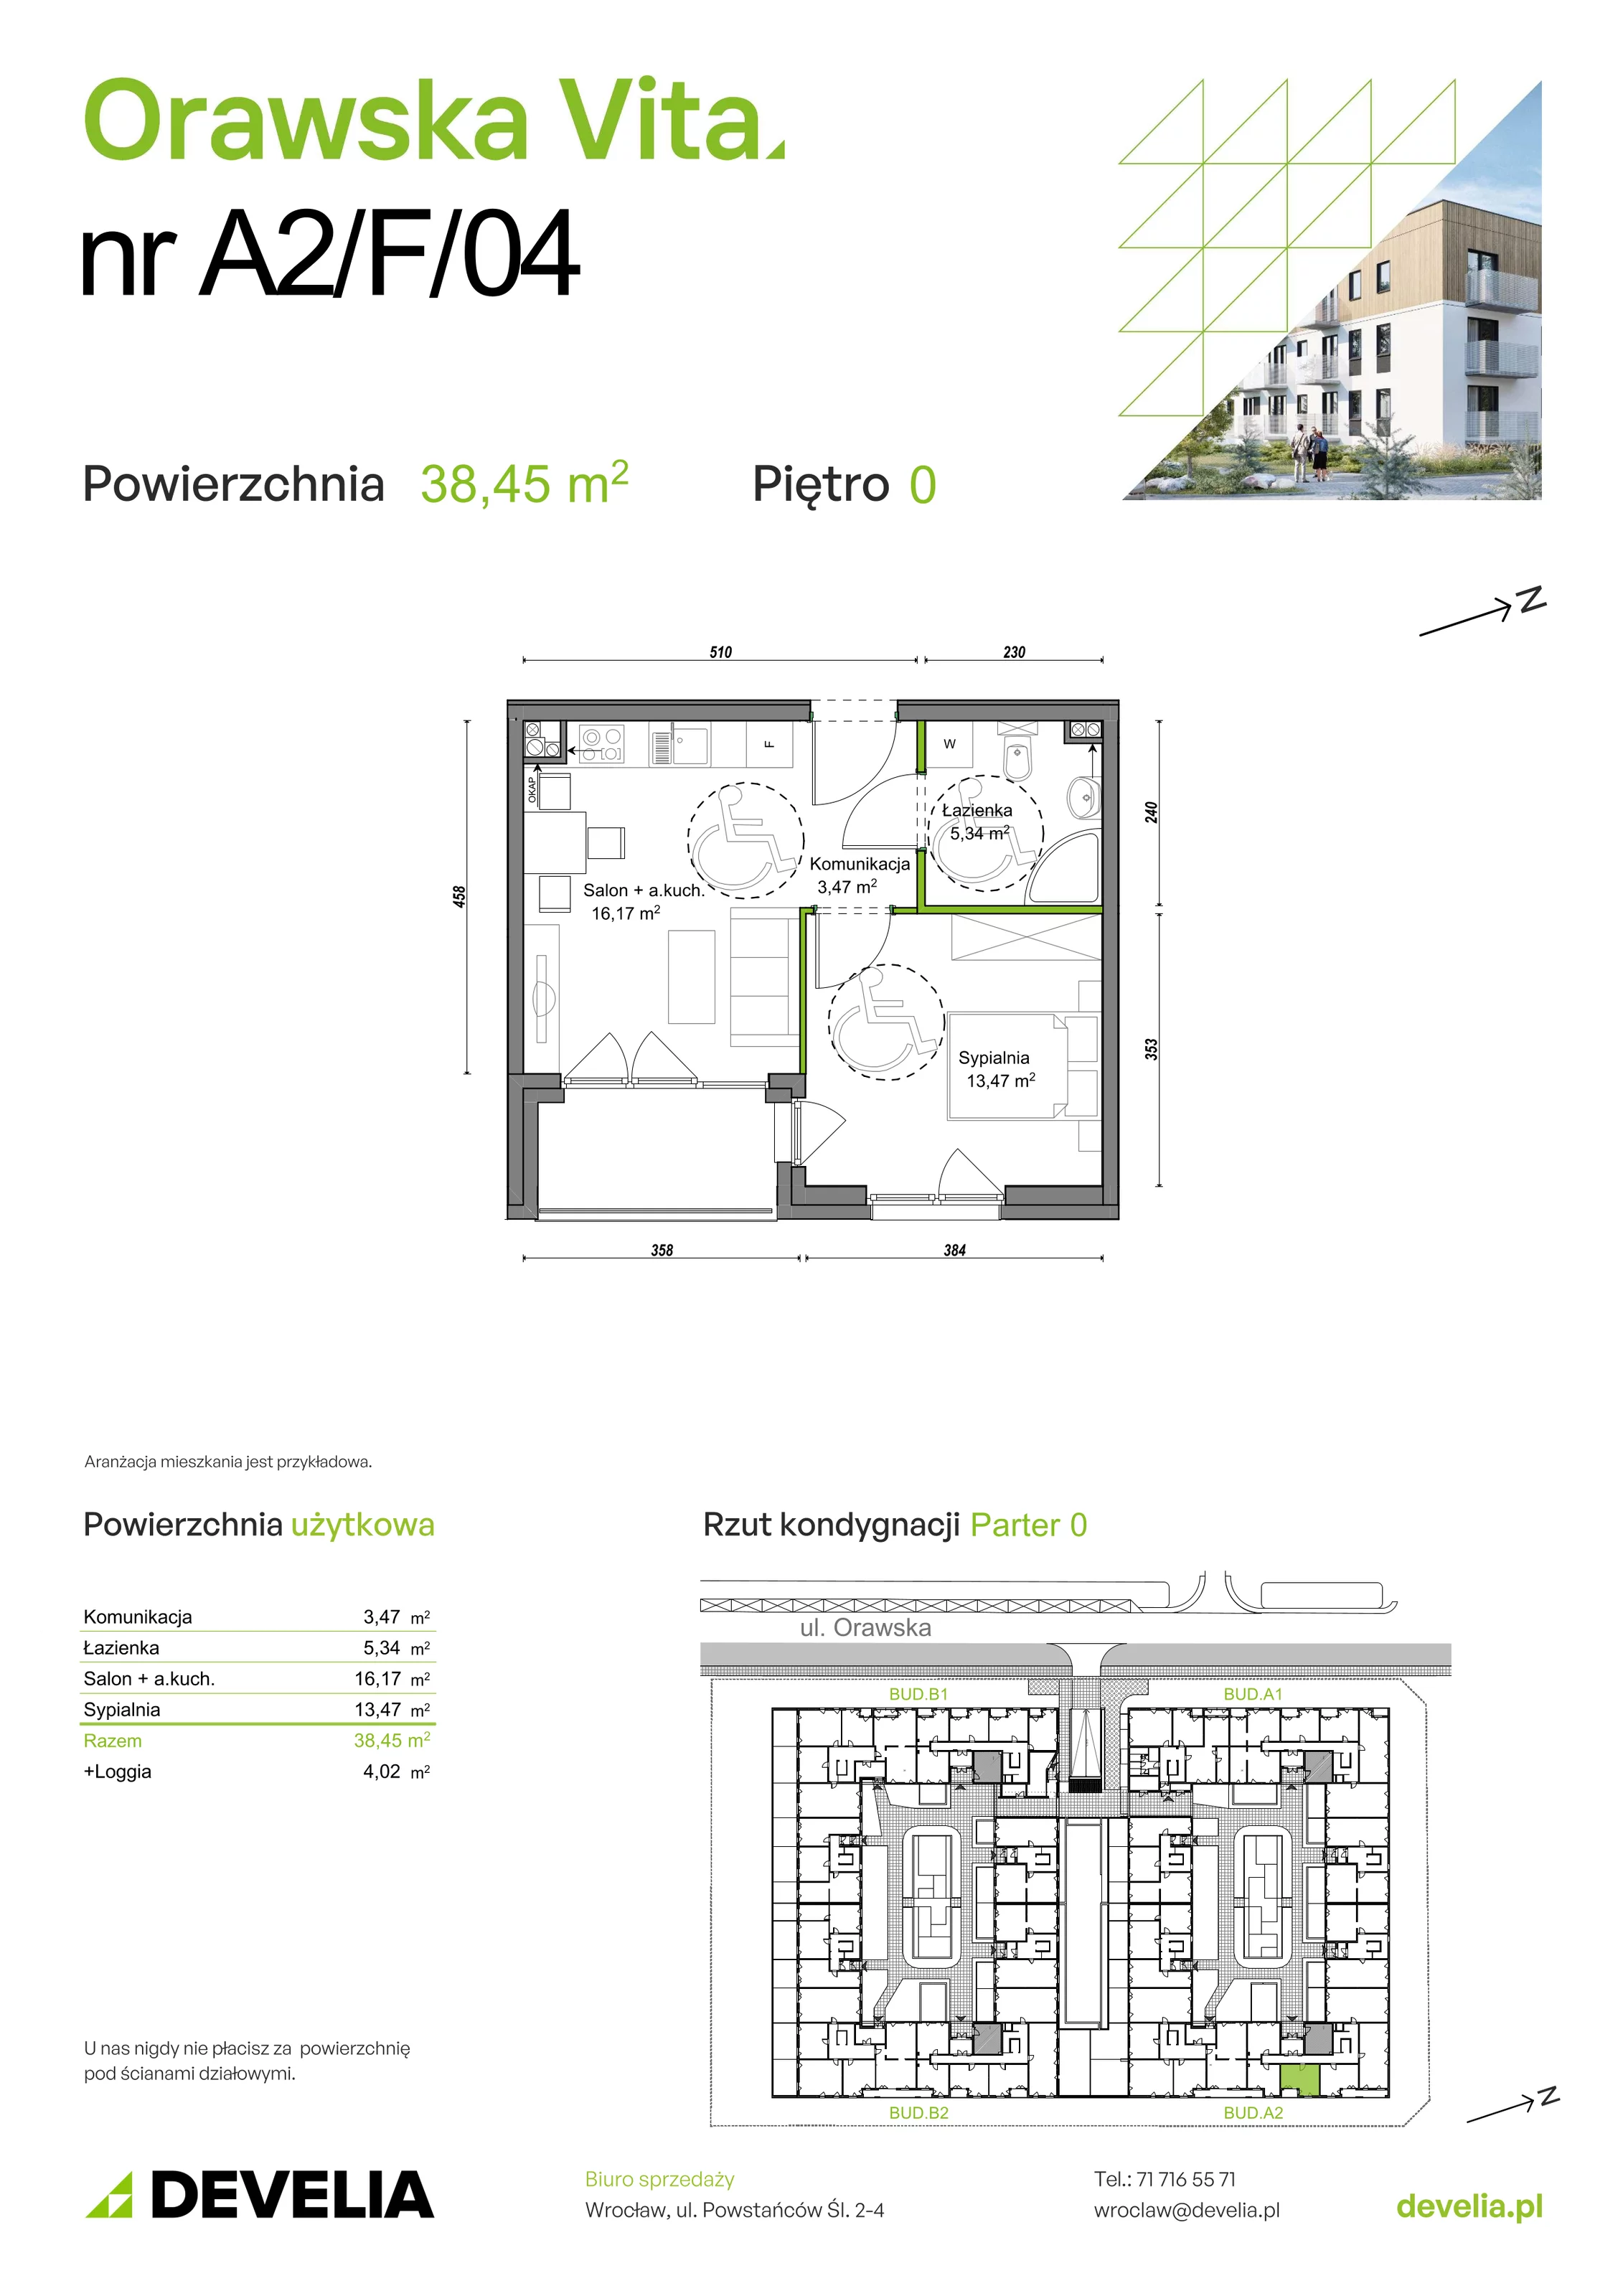 Mieszkanie 38,45 m², parter, oferta nr A2/F/04, Orawska Vita, Wrocław, Ołtaszyn, Krzyki, ul. Orawska 73